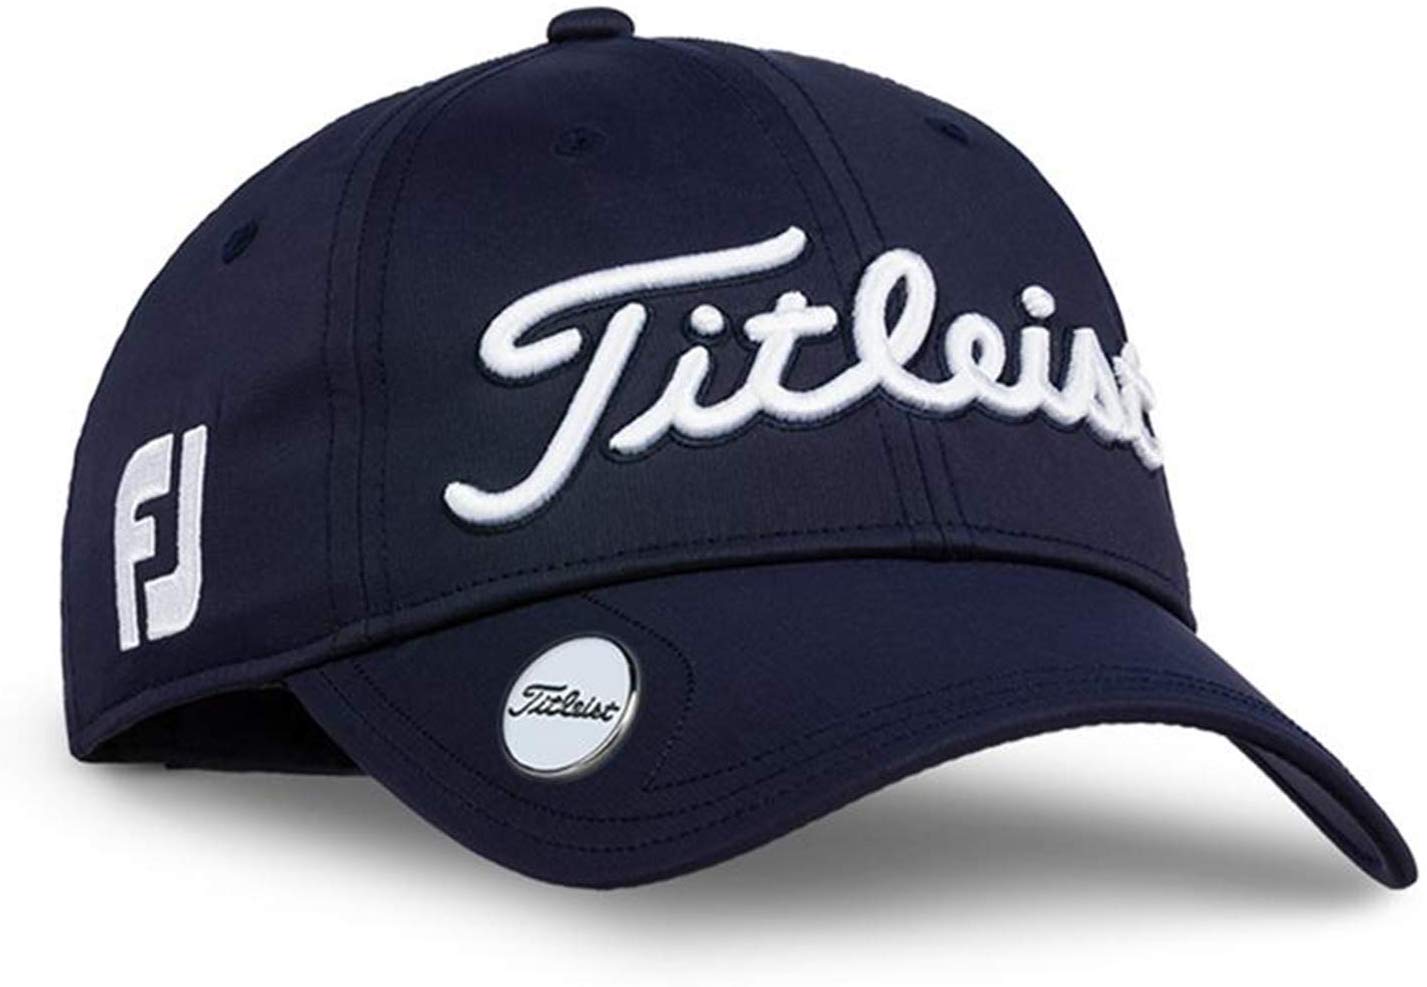 Titleist Womens Tour Performance Golf Hats